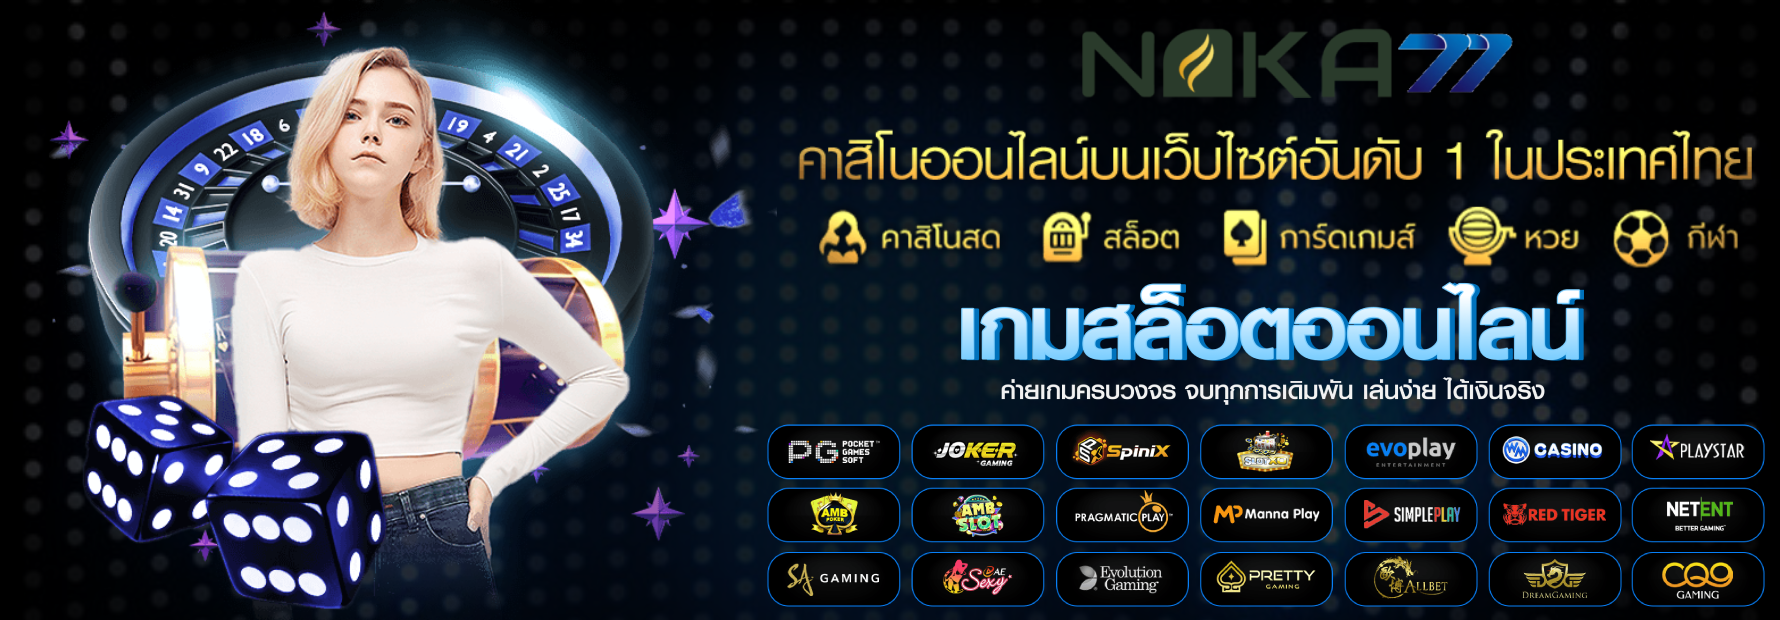 naka77 คาสิโนชั้นนำ เชื่อถือได้ จ่ายจริง ในไทย